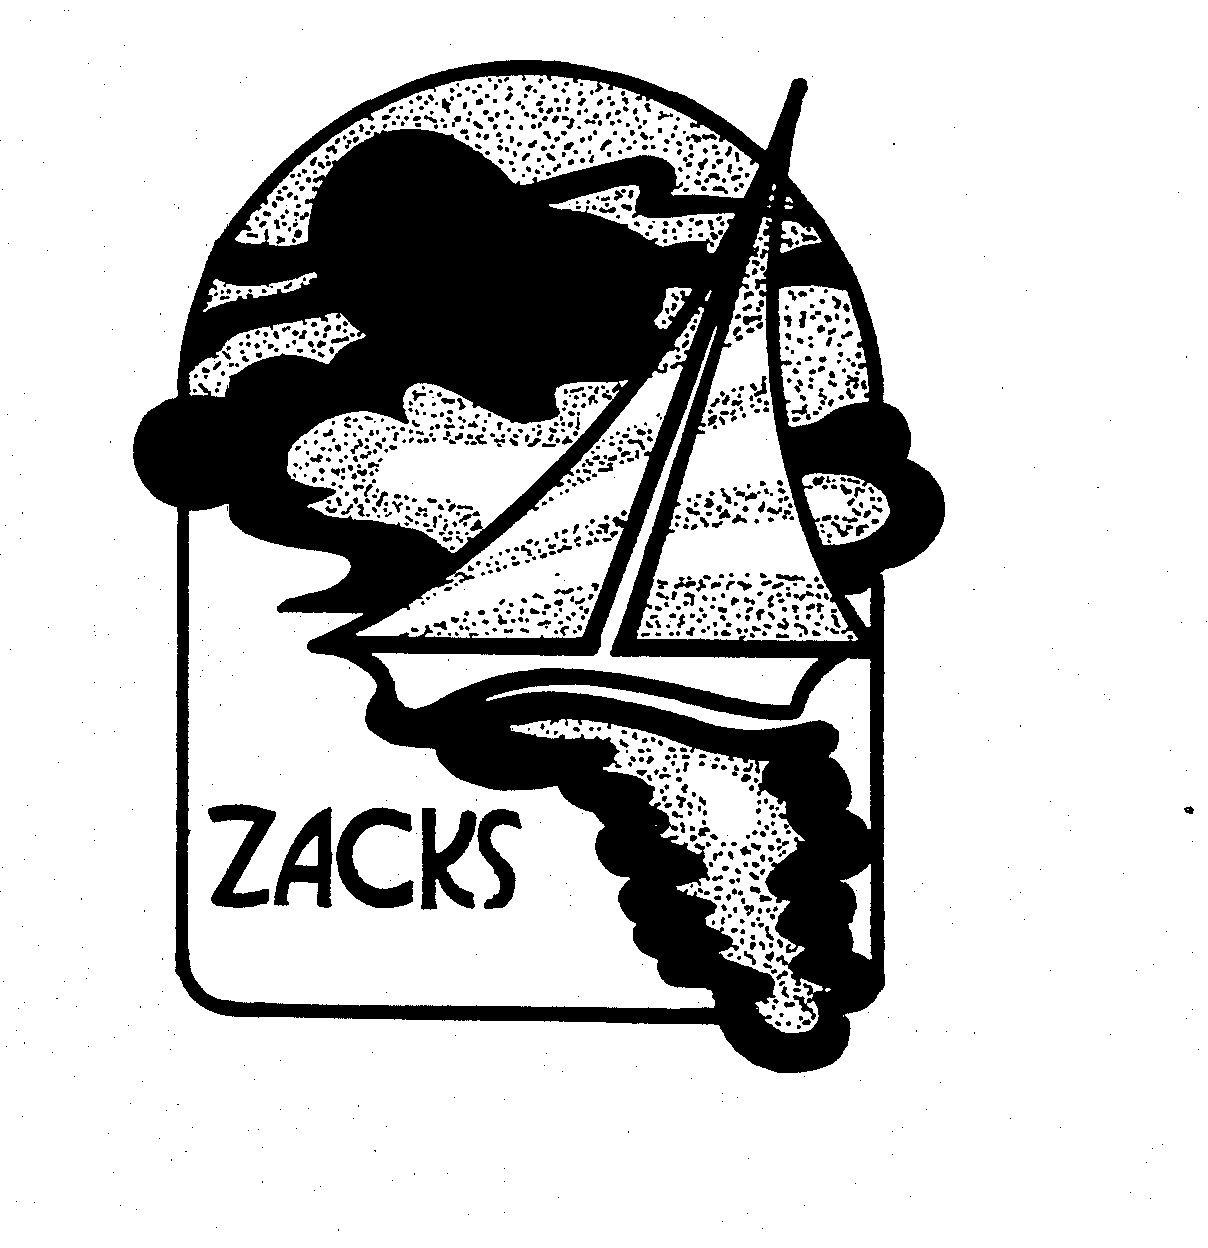 ZACKS